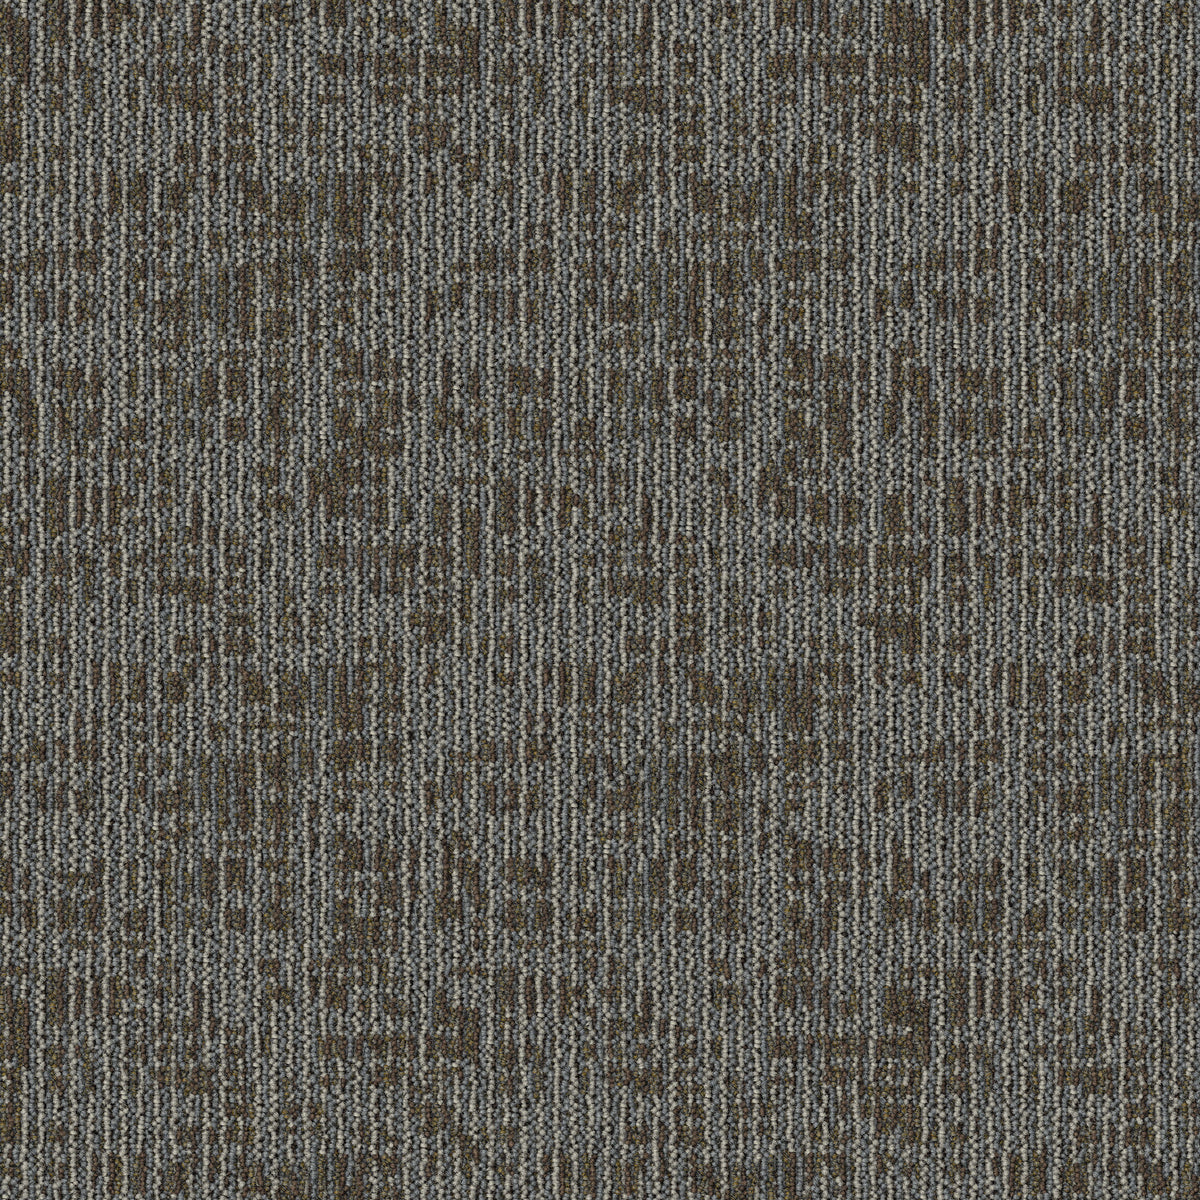 Mohawk Group - Sketch Effect - Shaded Lines - Carpet Tile - Light Elm